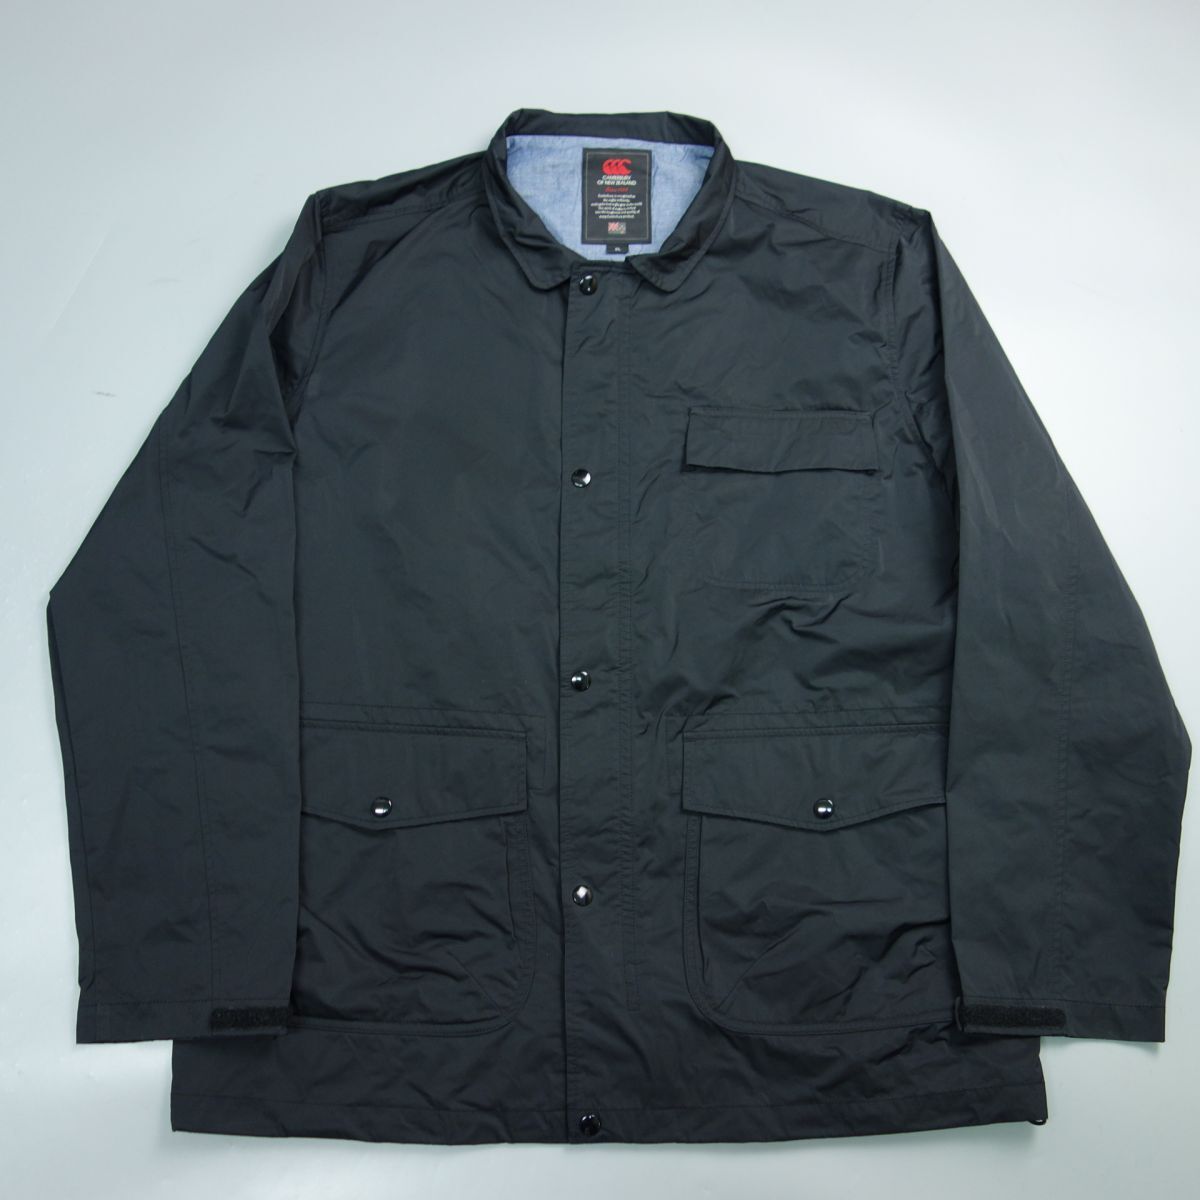  big size canterbury canterbury coach jacket blouson black men's 3L